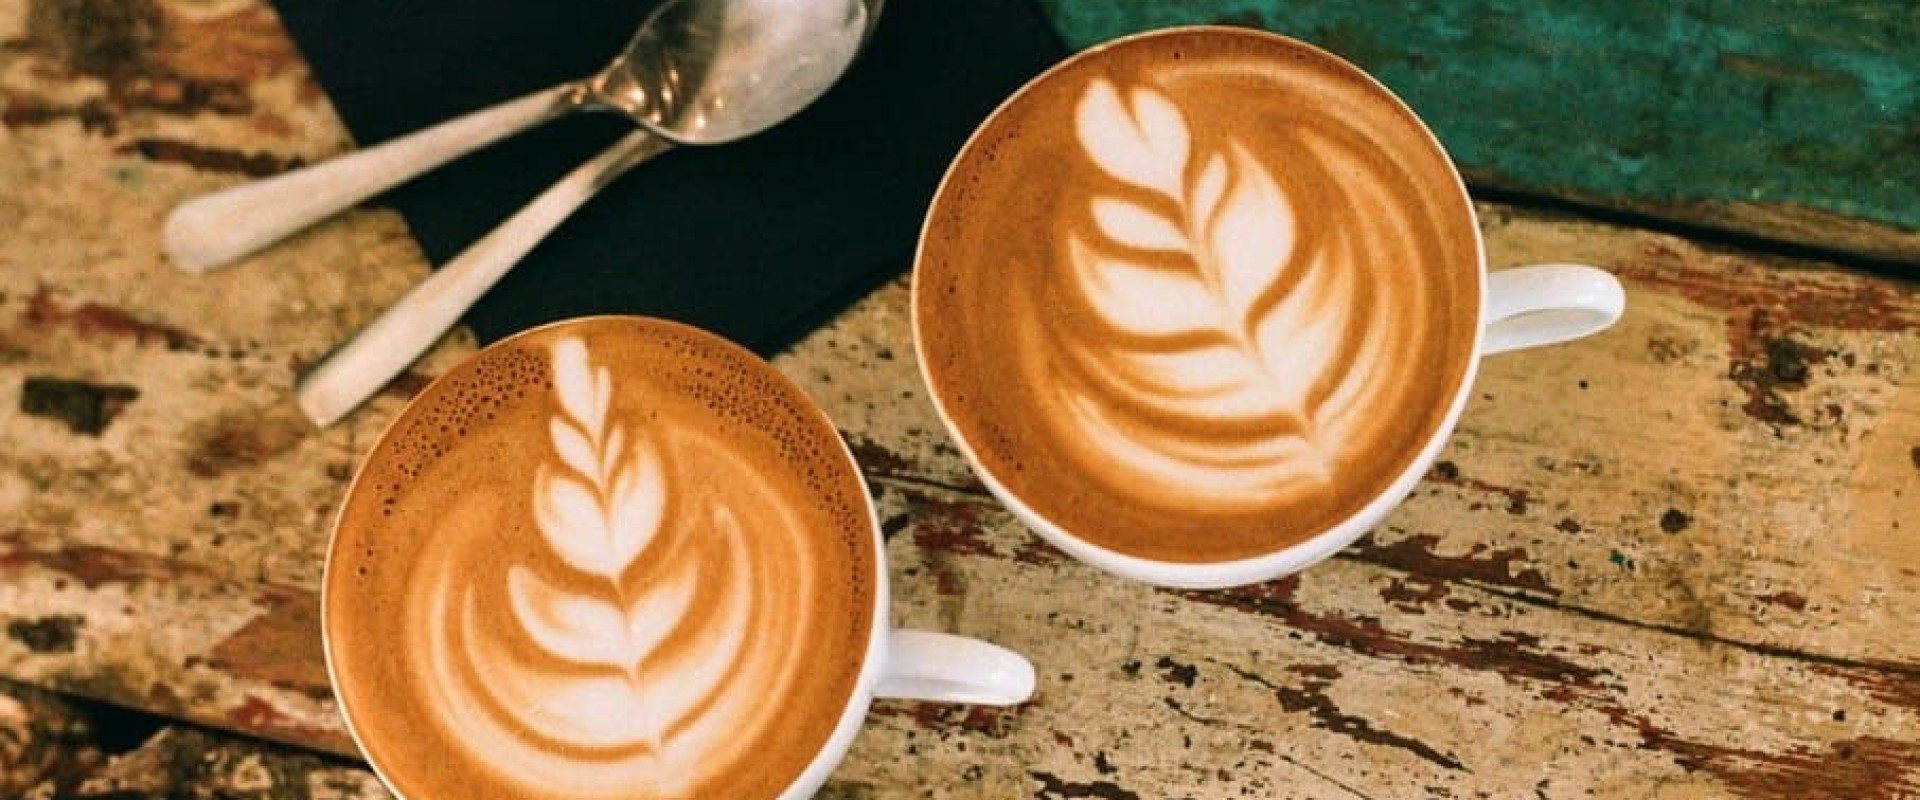 От идеи до воплощения: 5 шагов для открытия кофейни